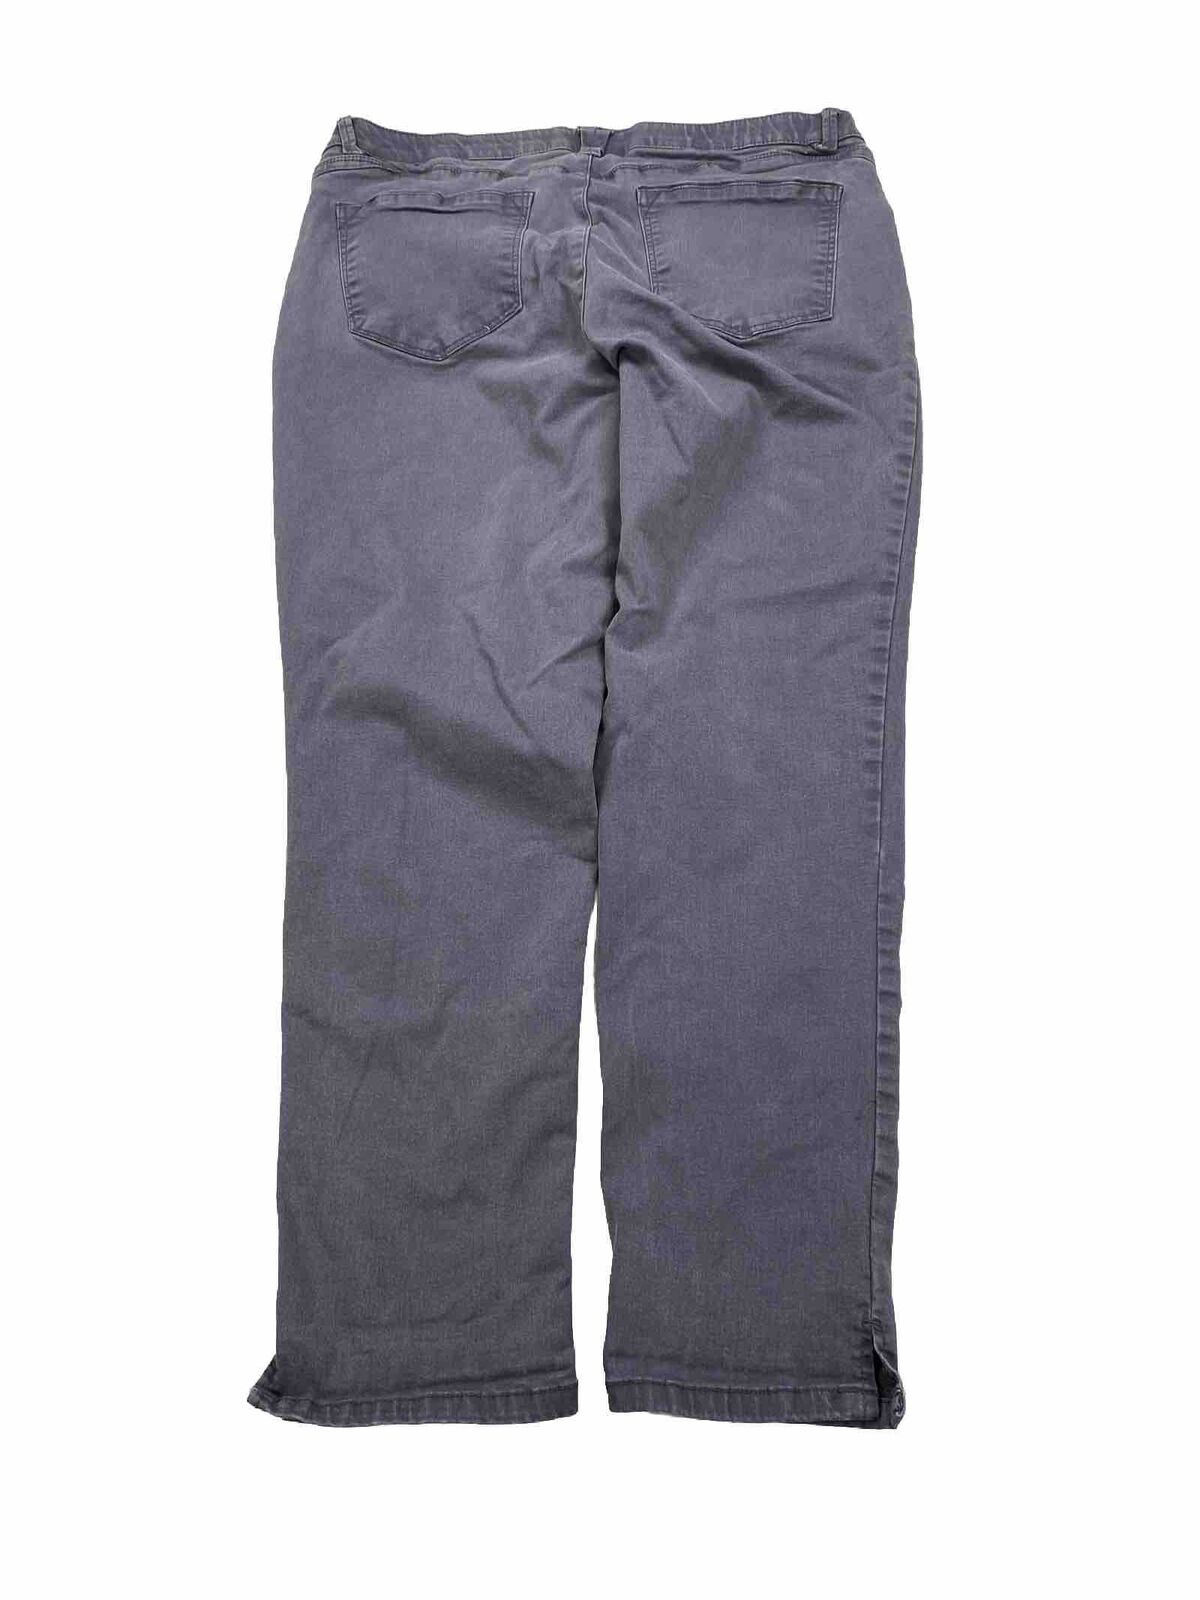 Wit and Wisdom Women's Gray Stretch Skinny Jeans - 14